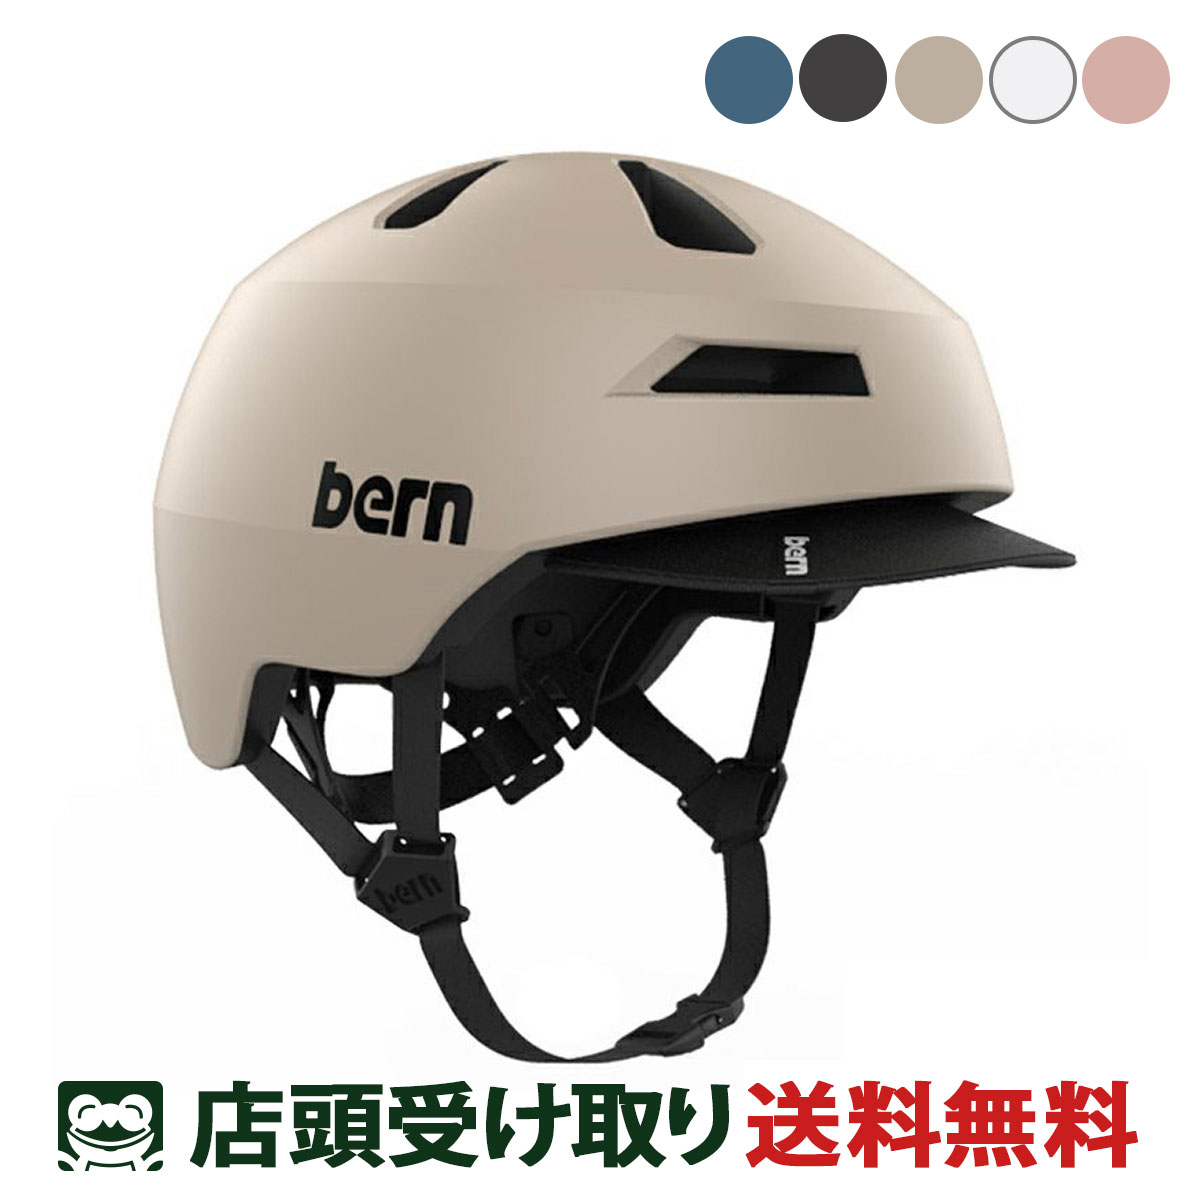 送料無料 店頭受取限定 バーン 自転車 大人用ヘルメット・ウェア ブレントウ ッド2.0 bern BE-BM15Z